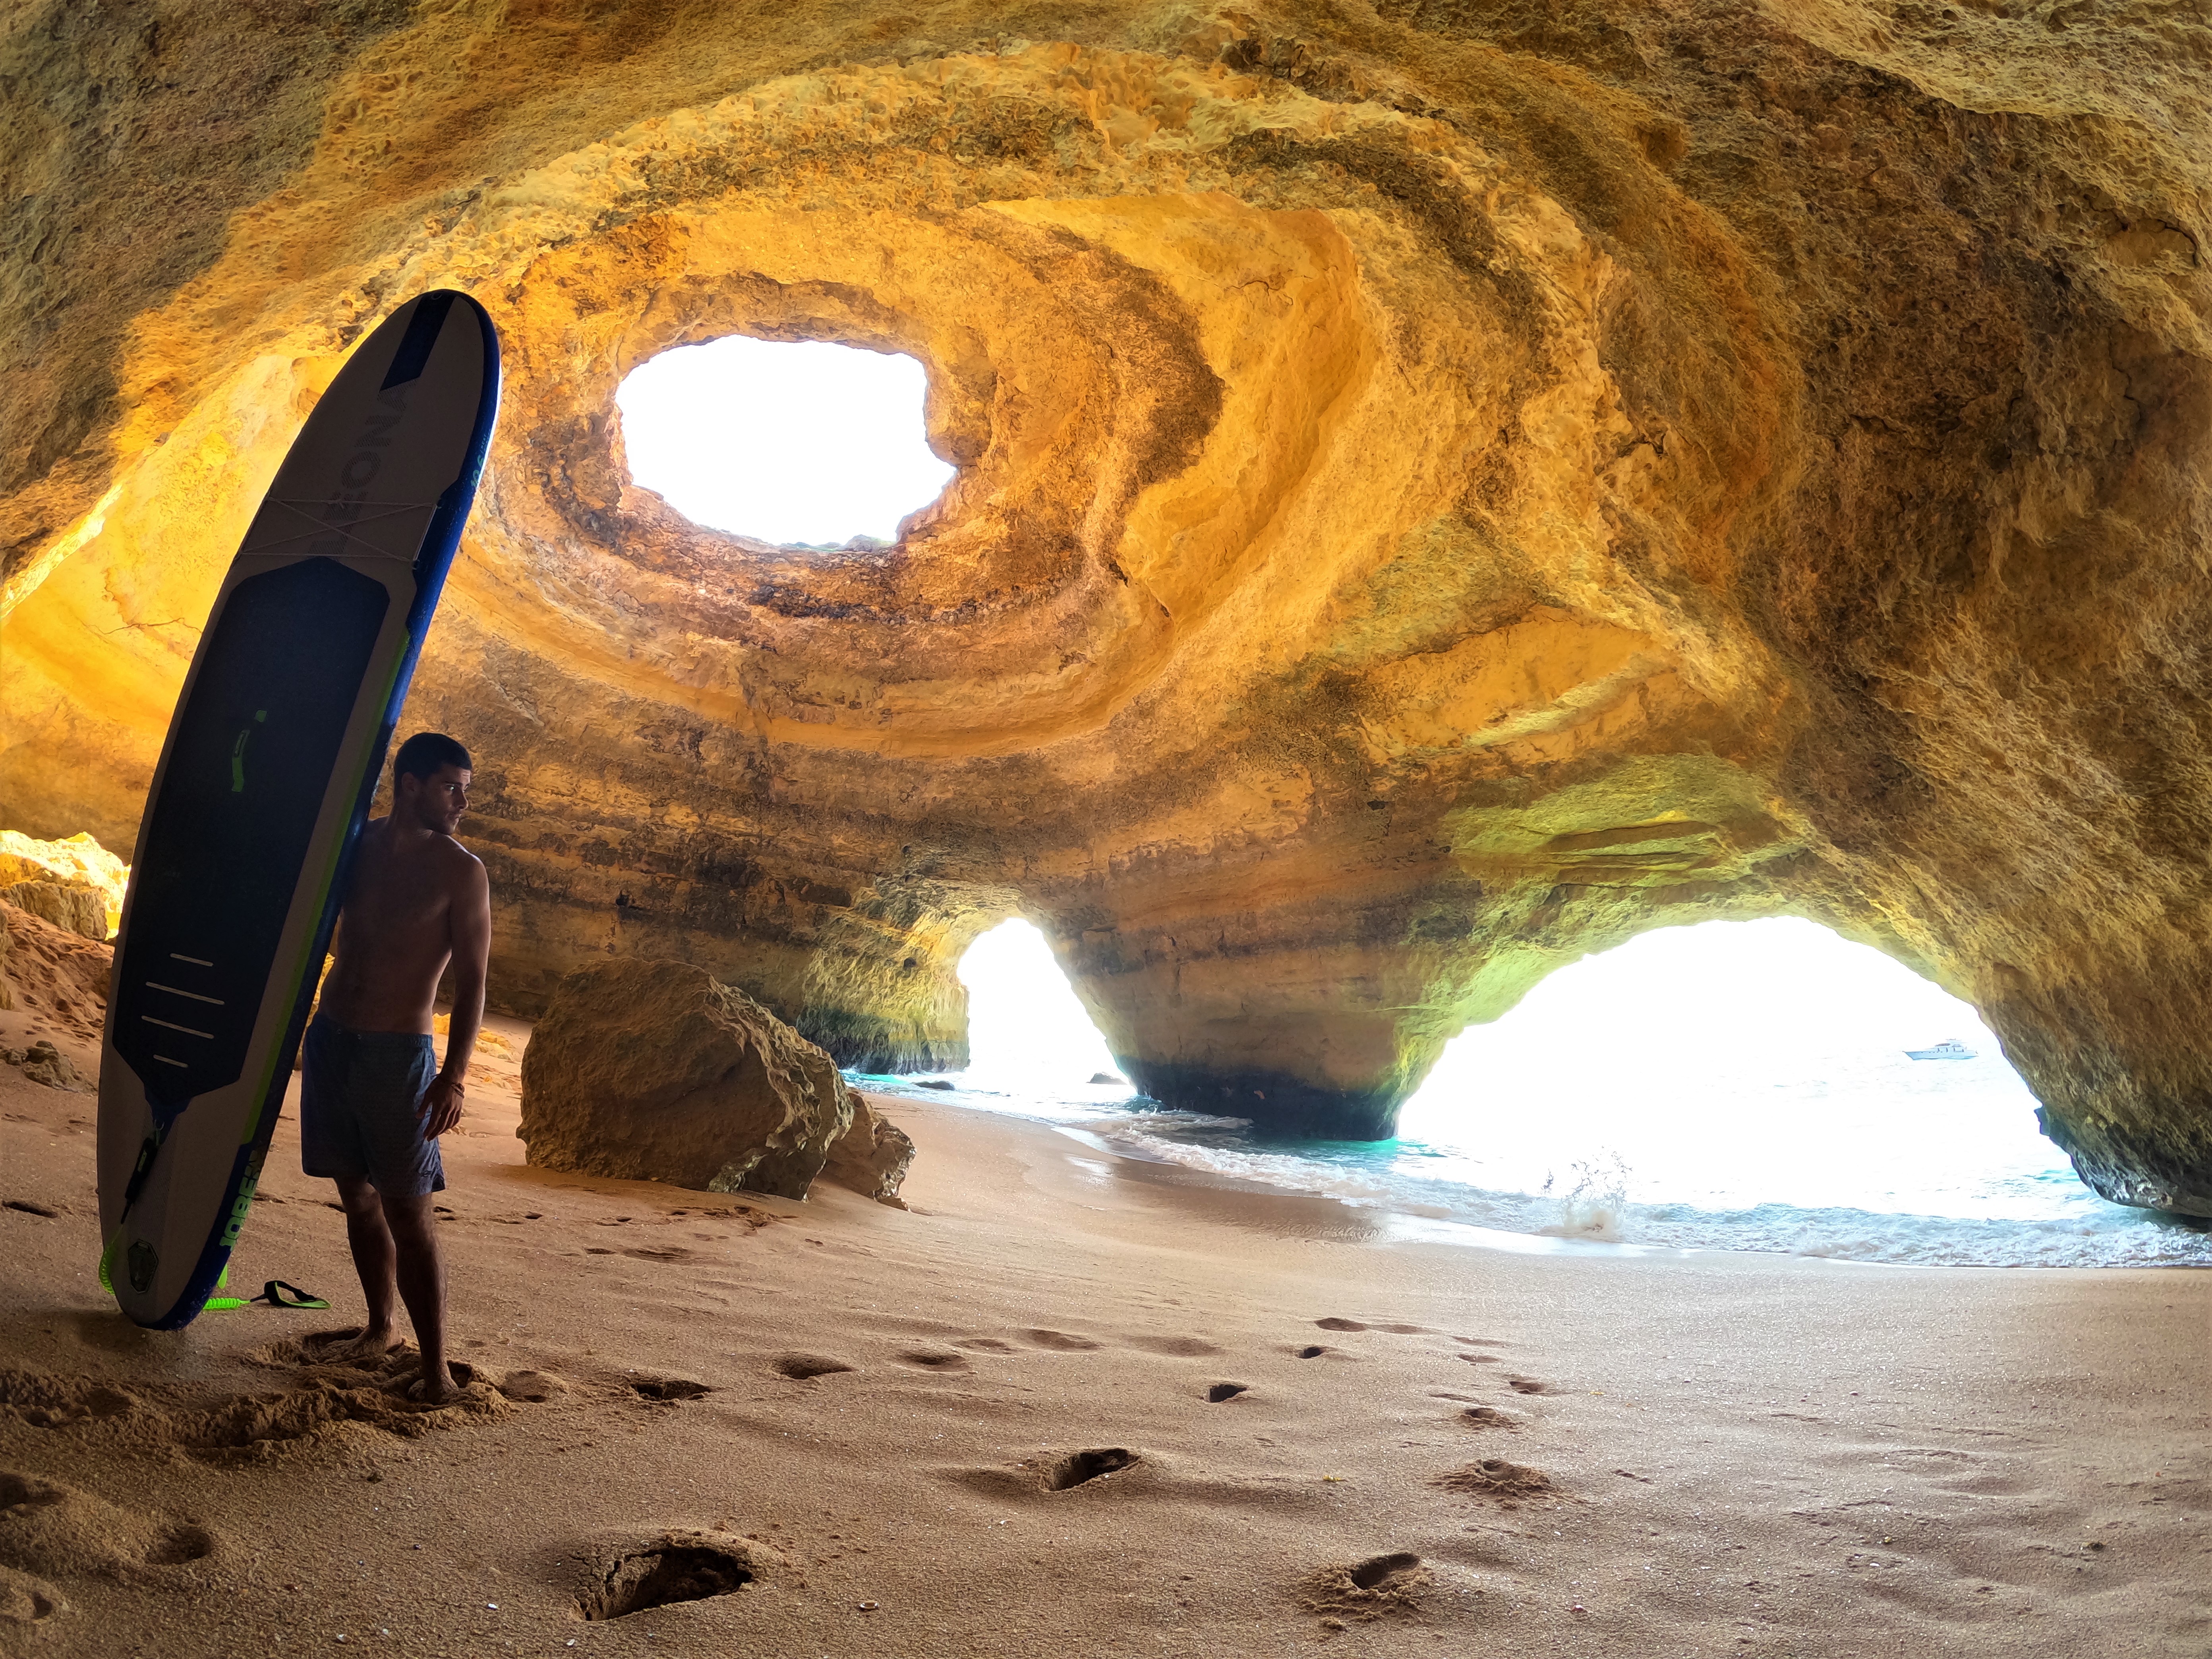 Eco SUP Tours to Benagil Cave and Carvoeiro Area